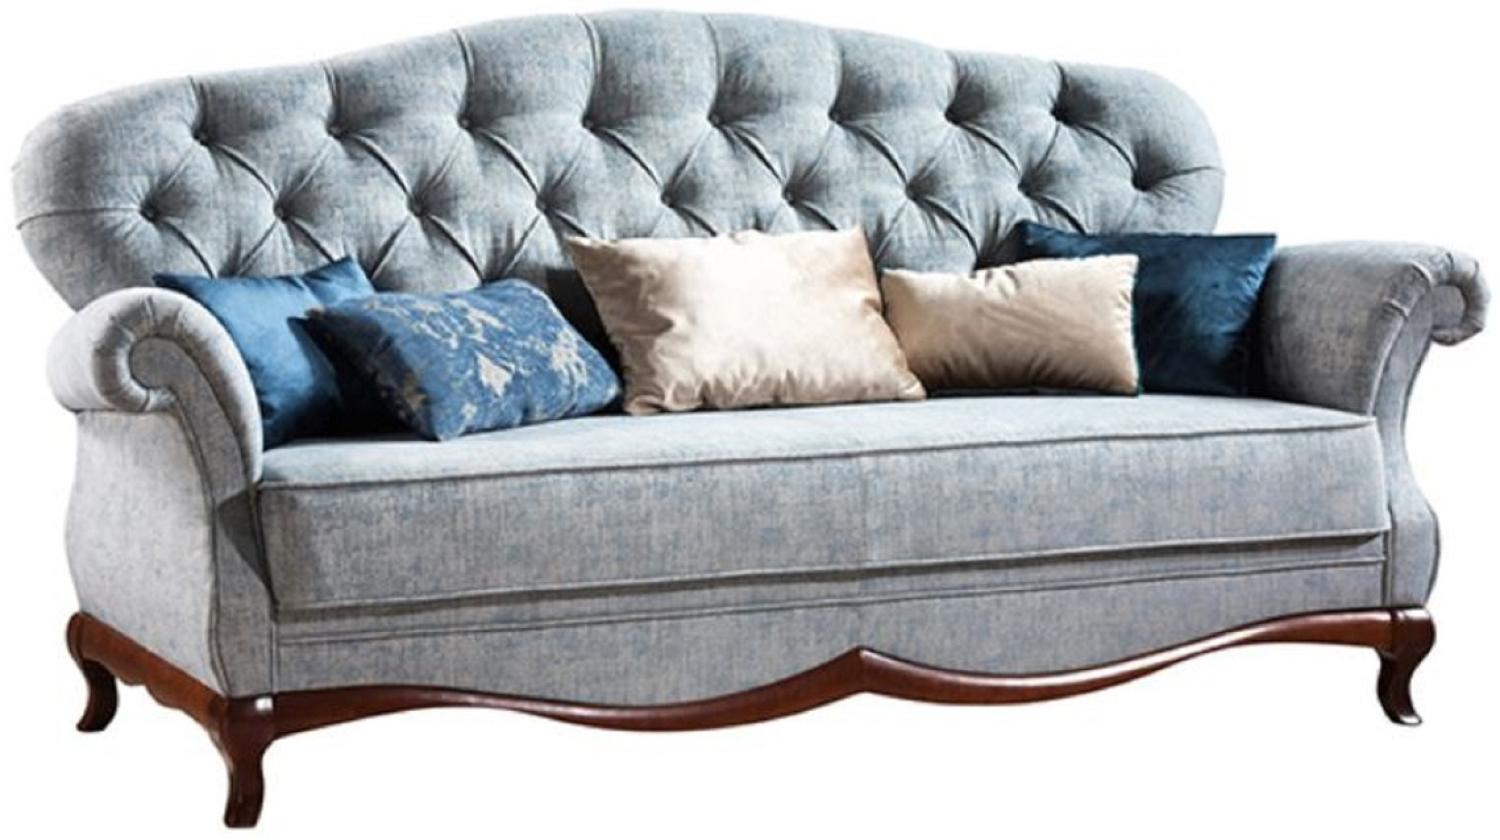 Casa Padrino Luxus Art Deco Chesterfield Wohnzimmer Sofa Vintage Blau / Dunkelbraun 206 x 90 x H. 98 cm Bild 1